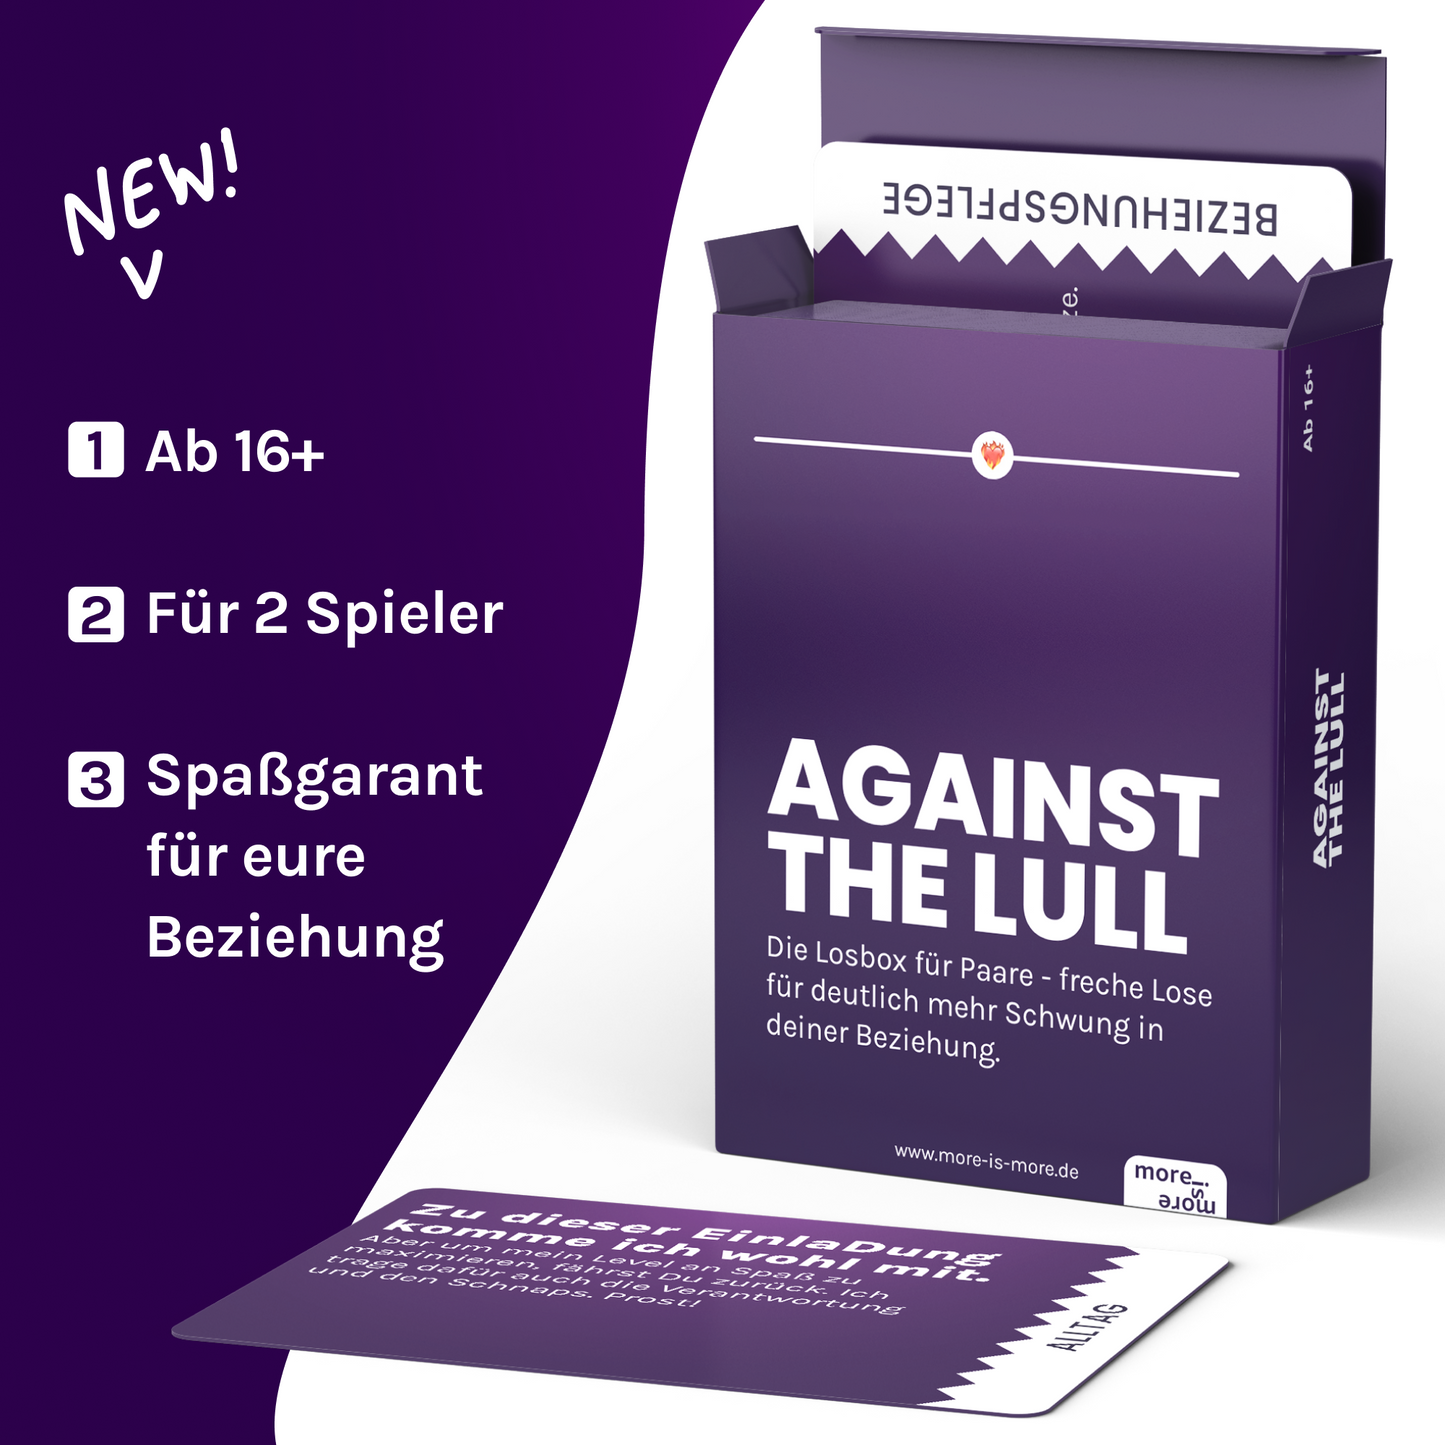 Against the Lull